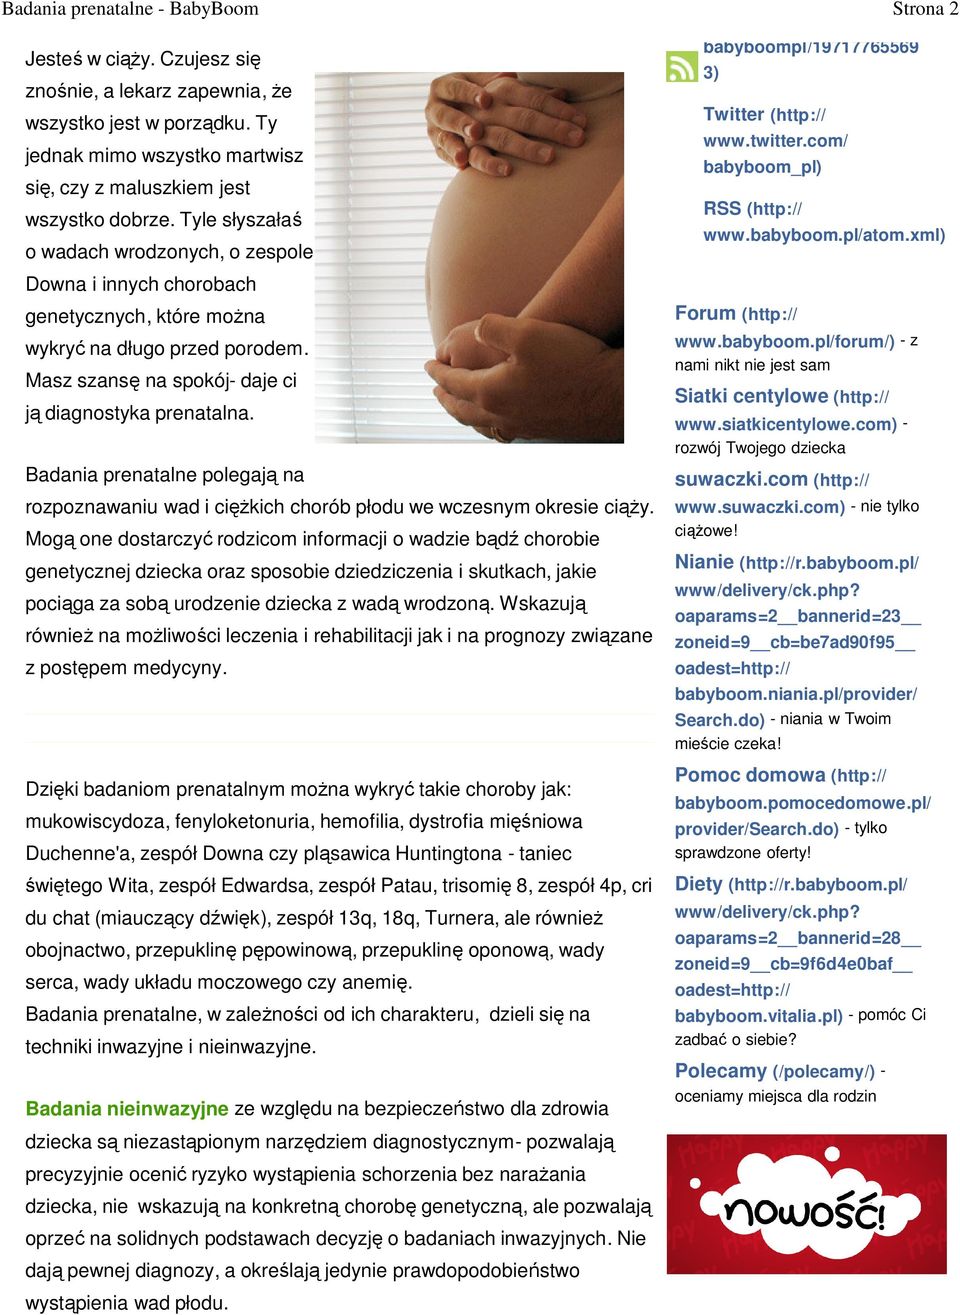 Badania prenatalne polegają na rozpoznawaniu wad i ciężkich chorób płodu we wczesnym okresie ciąży.